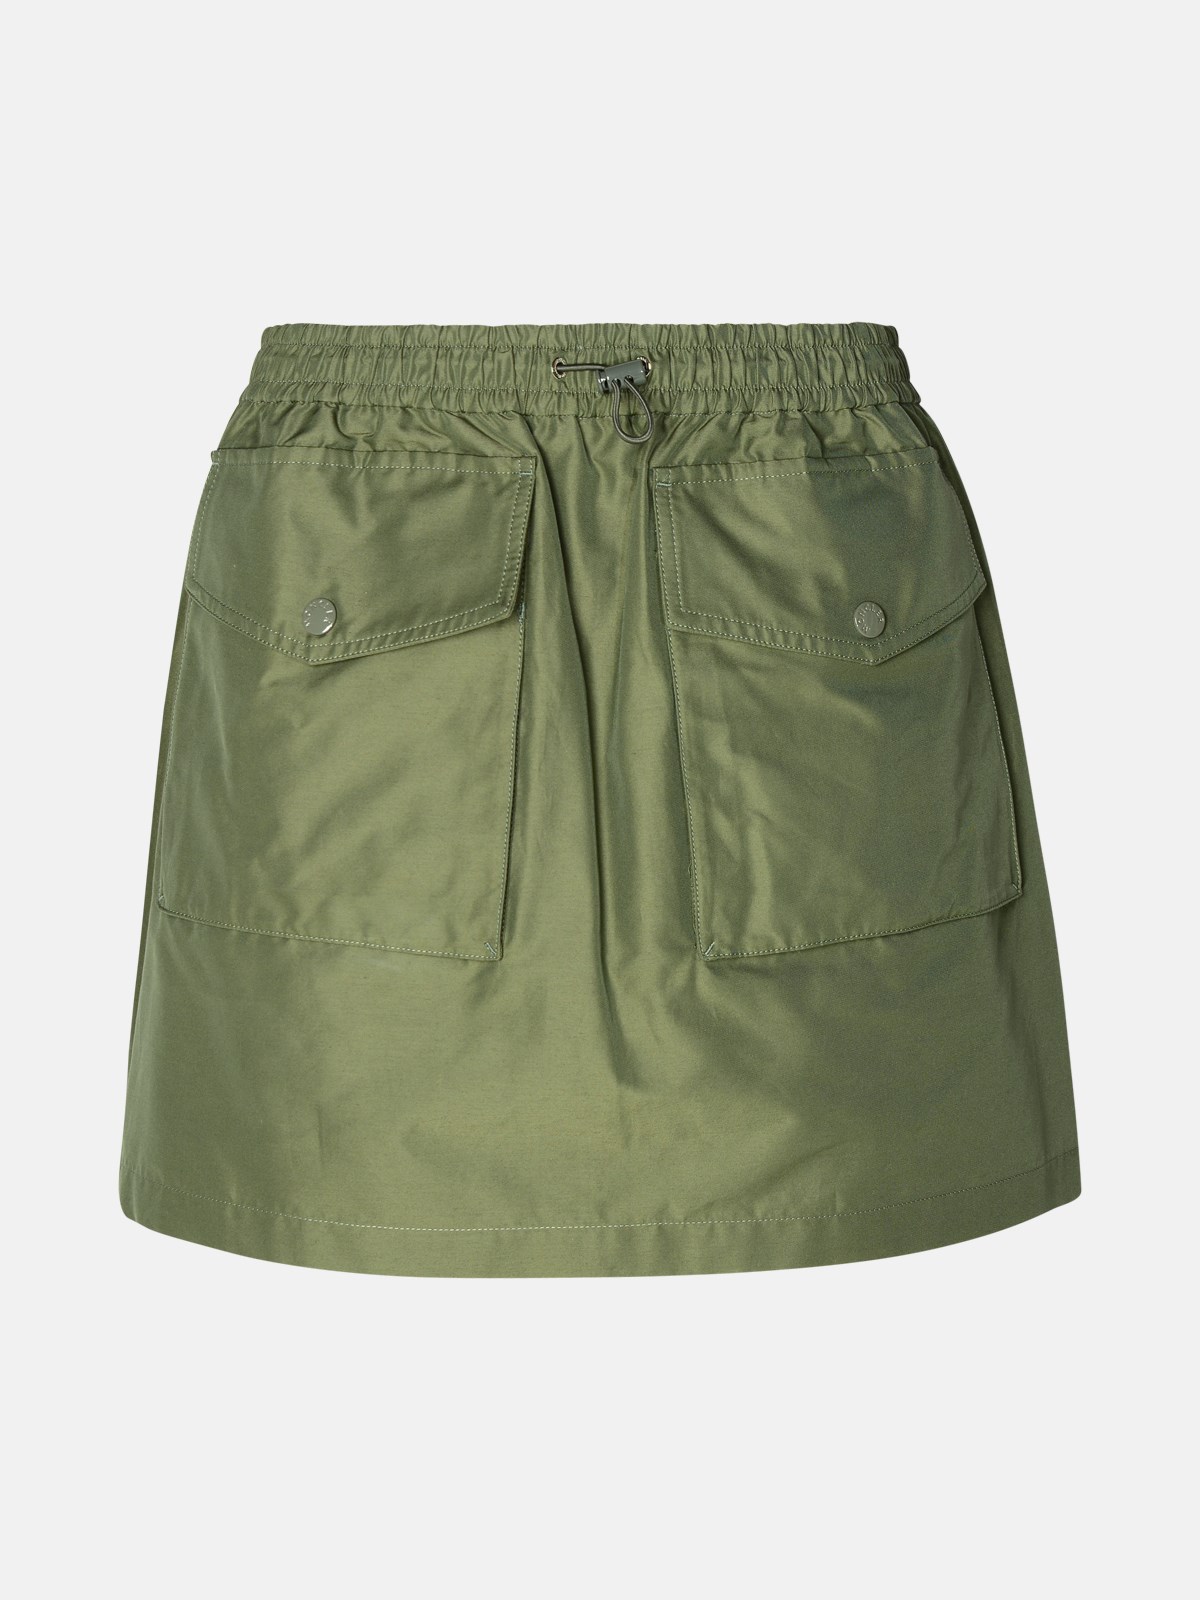 Moncler Cargo Miniskirt In Green Cotton Blend